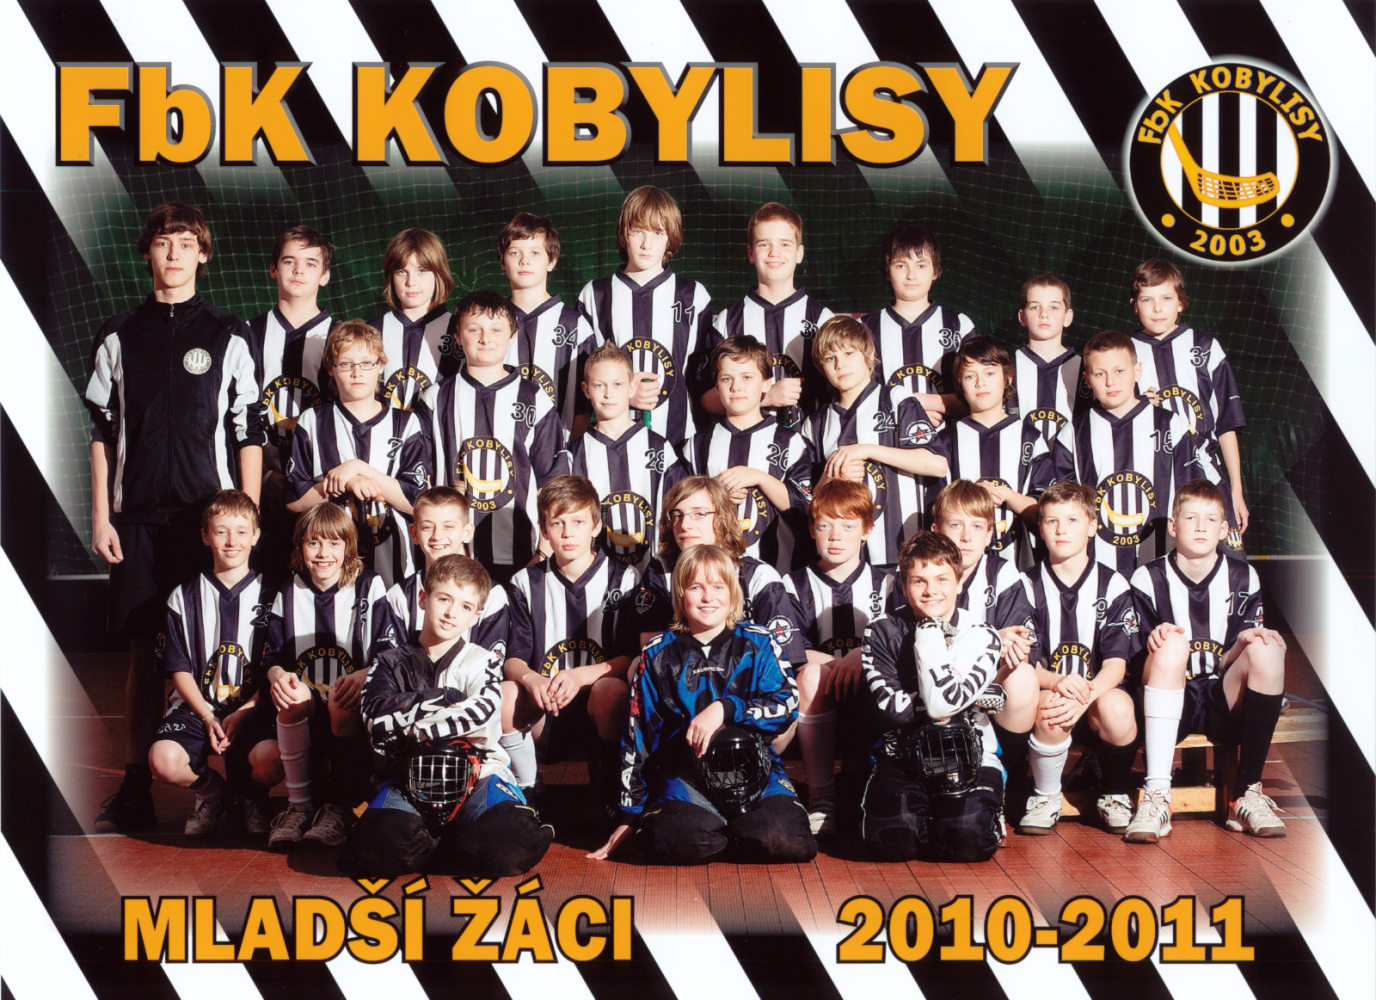 Tým mladších žáků, sezóna 2010-2011; Autor: Pavel Růžička SportKarty.cz; Zdroj: Archiv FbK Kobylisy